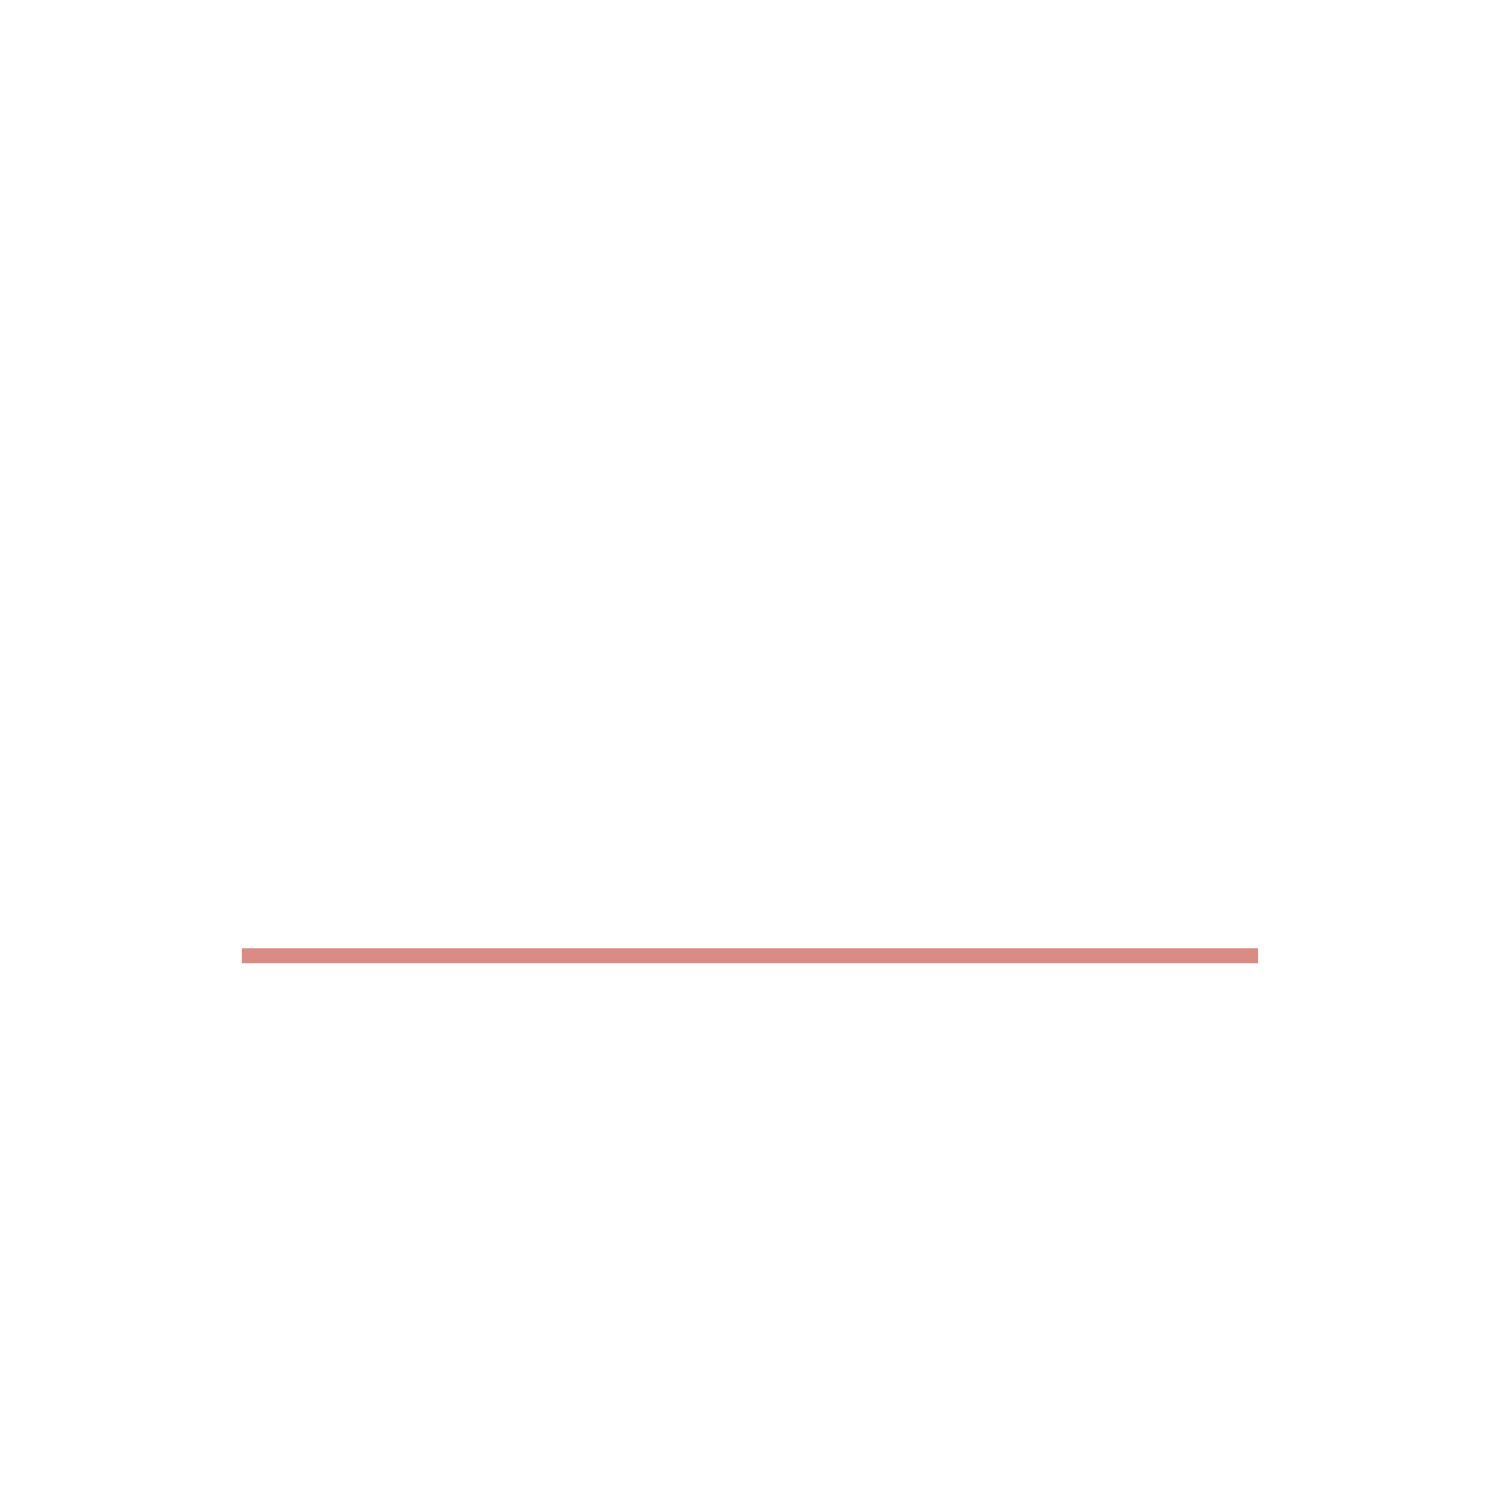 Tatjana Kiefler Virtuelle Assistentin Podcast Service Unterstützung Klang Schnitt Upload